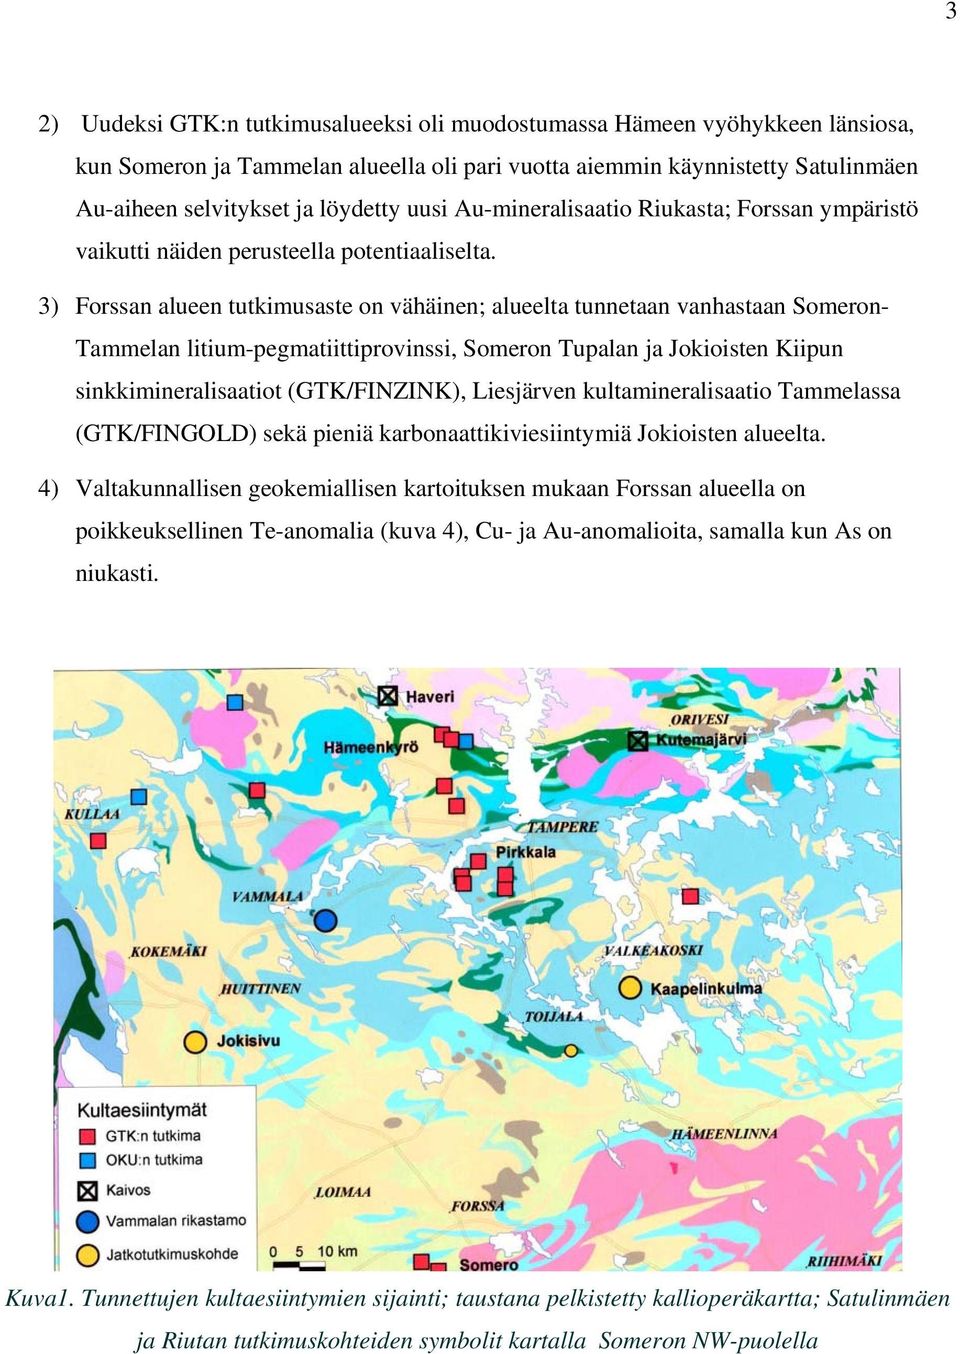 3) Forssan alueen tutkimusaste on vähäinen; alueelta tunnetaan vanhastaan Someron- Tammelan litium-pegmatiittiprovinssi, Someron Tupalan ja Jokioisten Kiipun sinkkimineralisaatiot (GTK/FINZINK),